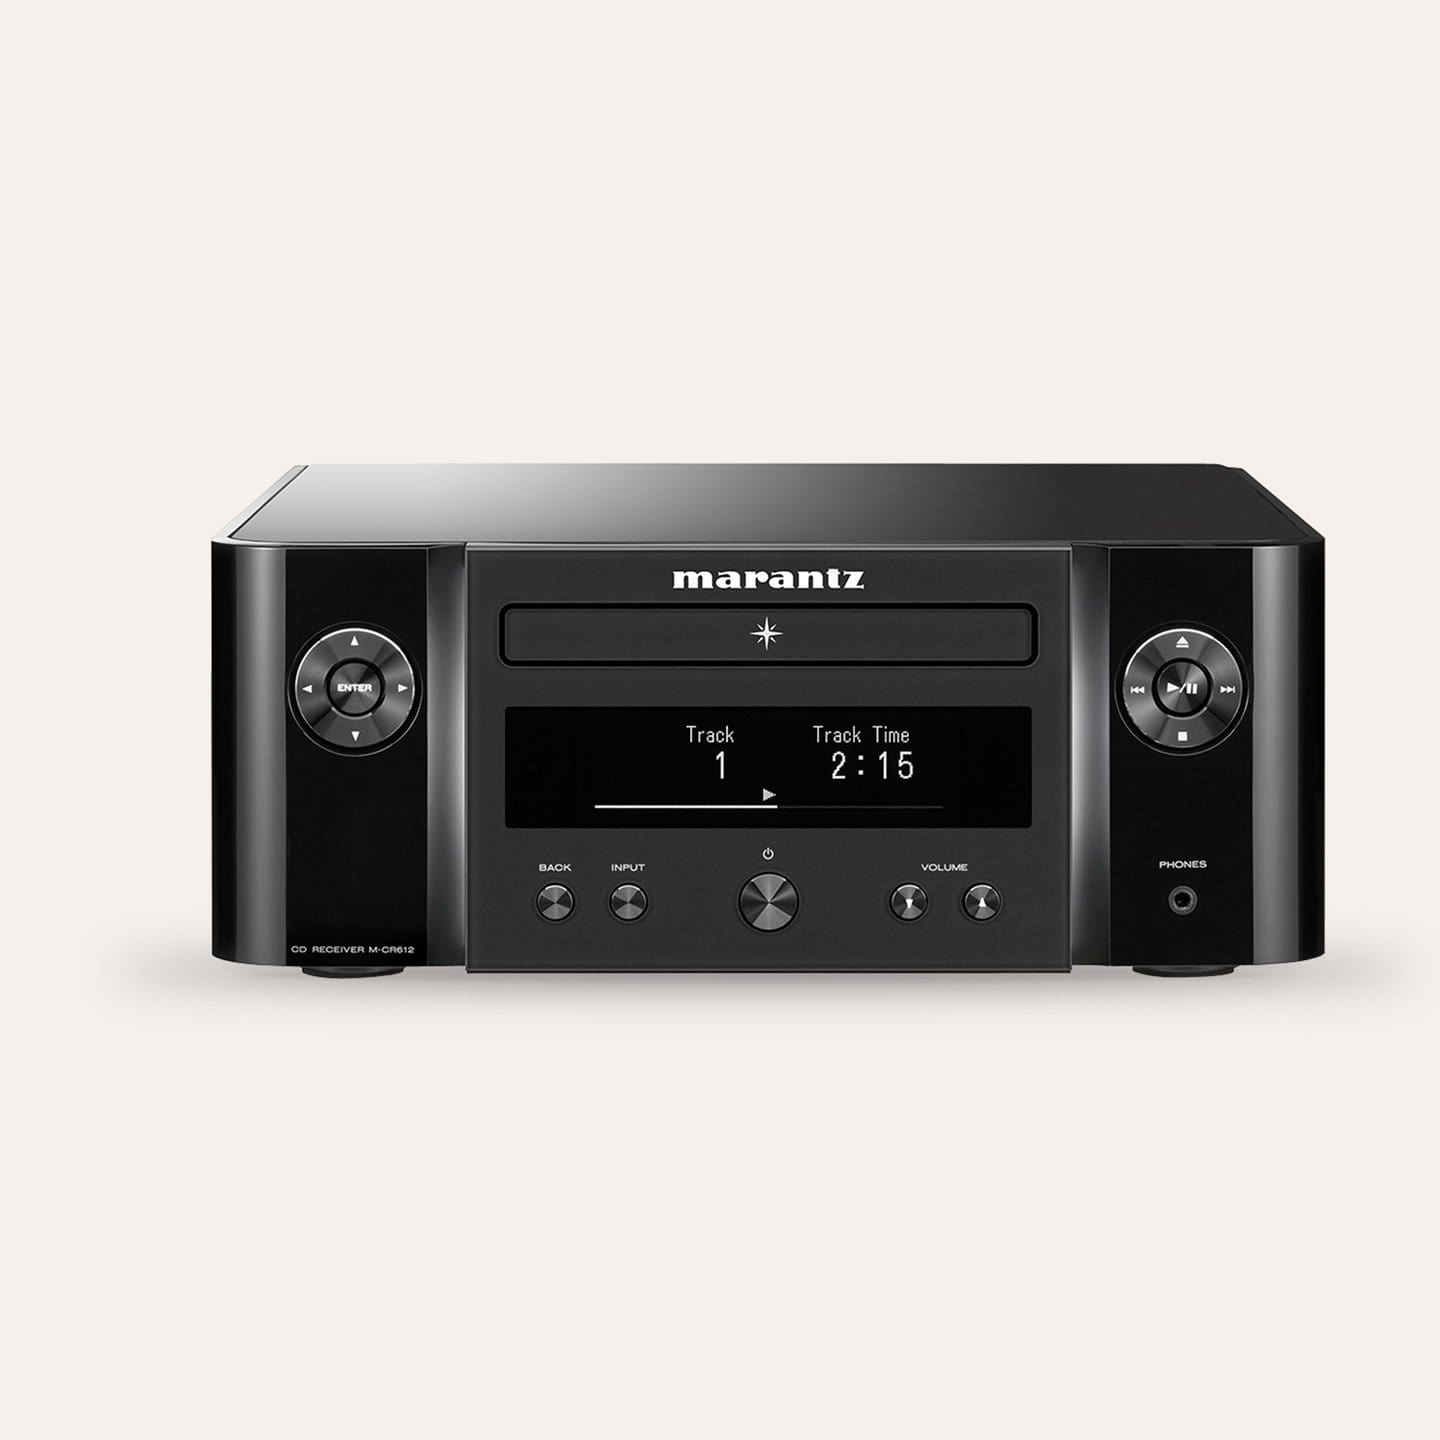 Marantz M-CR612 Compact Network CD Receiver